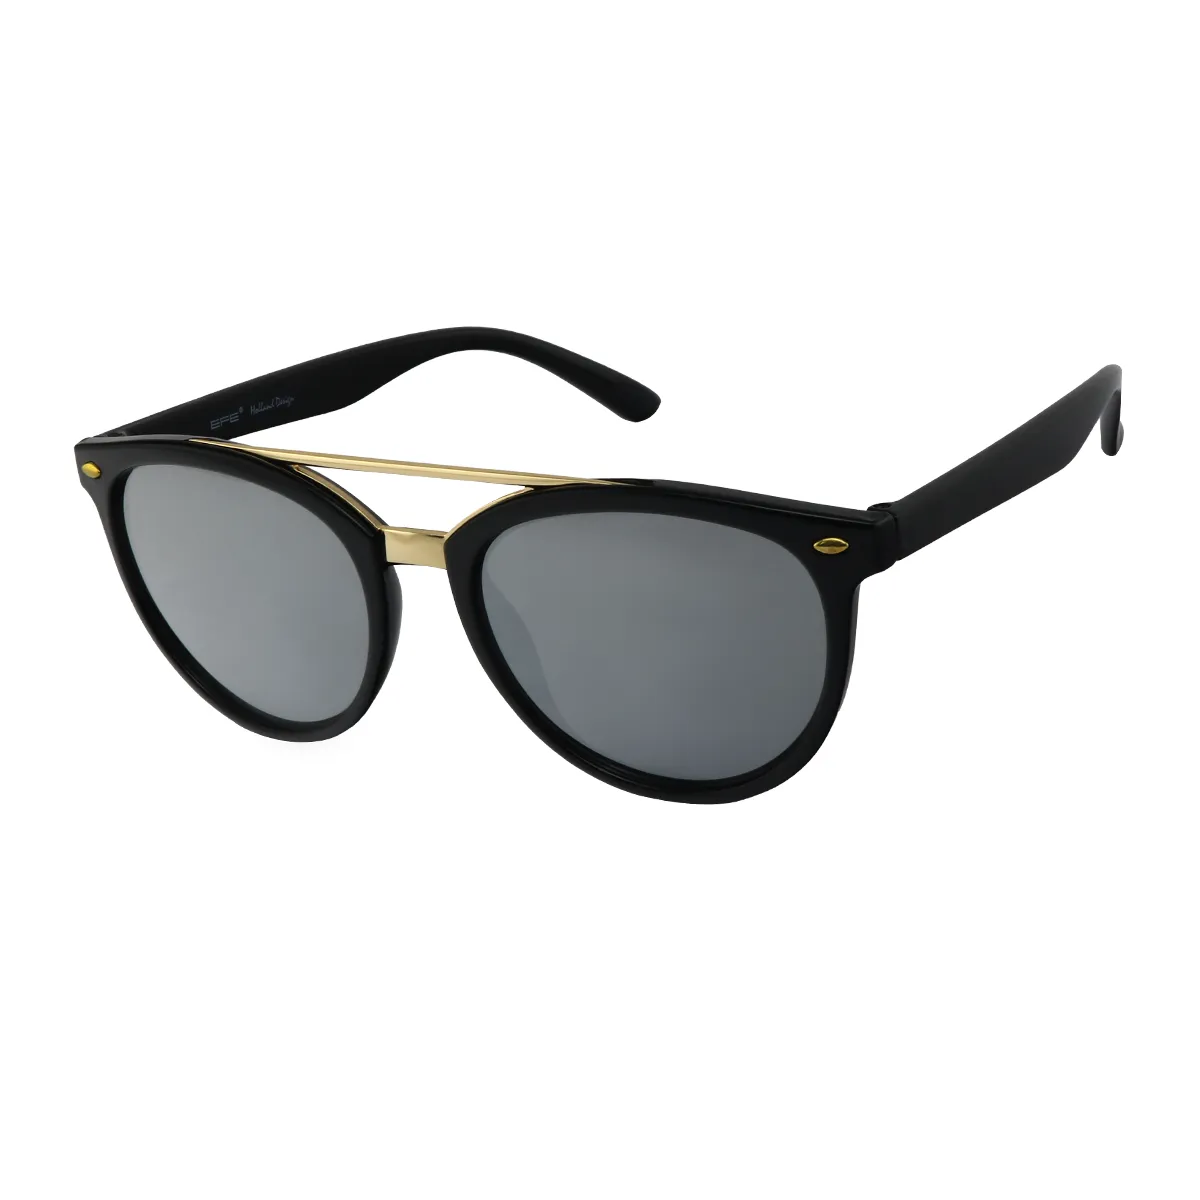 Rhode - Oval Black Sunglasses for Women